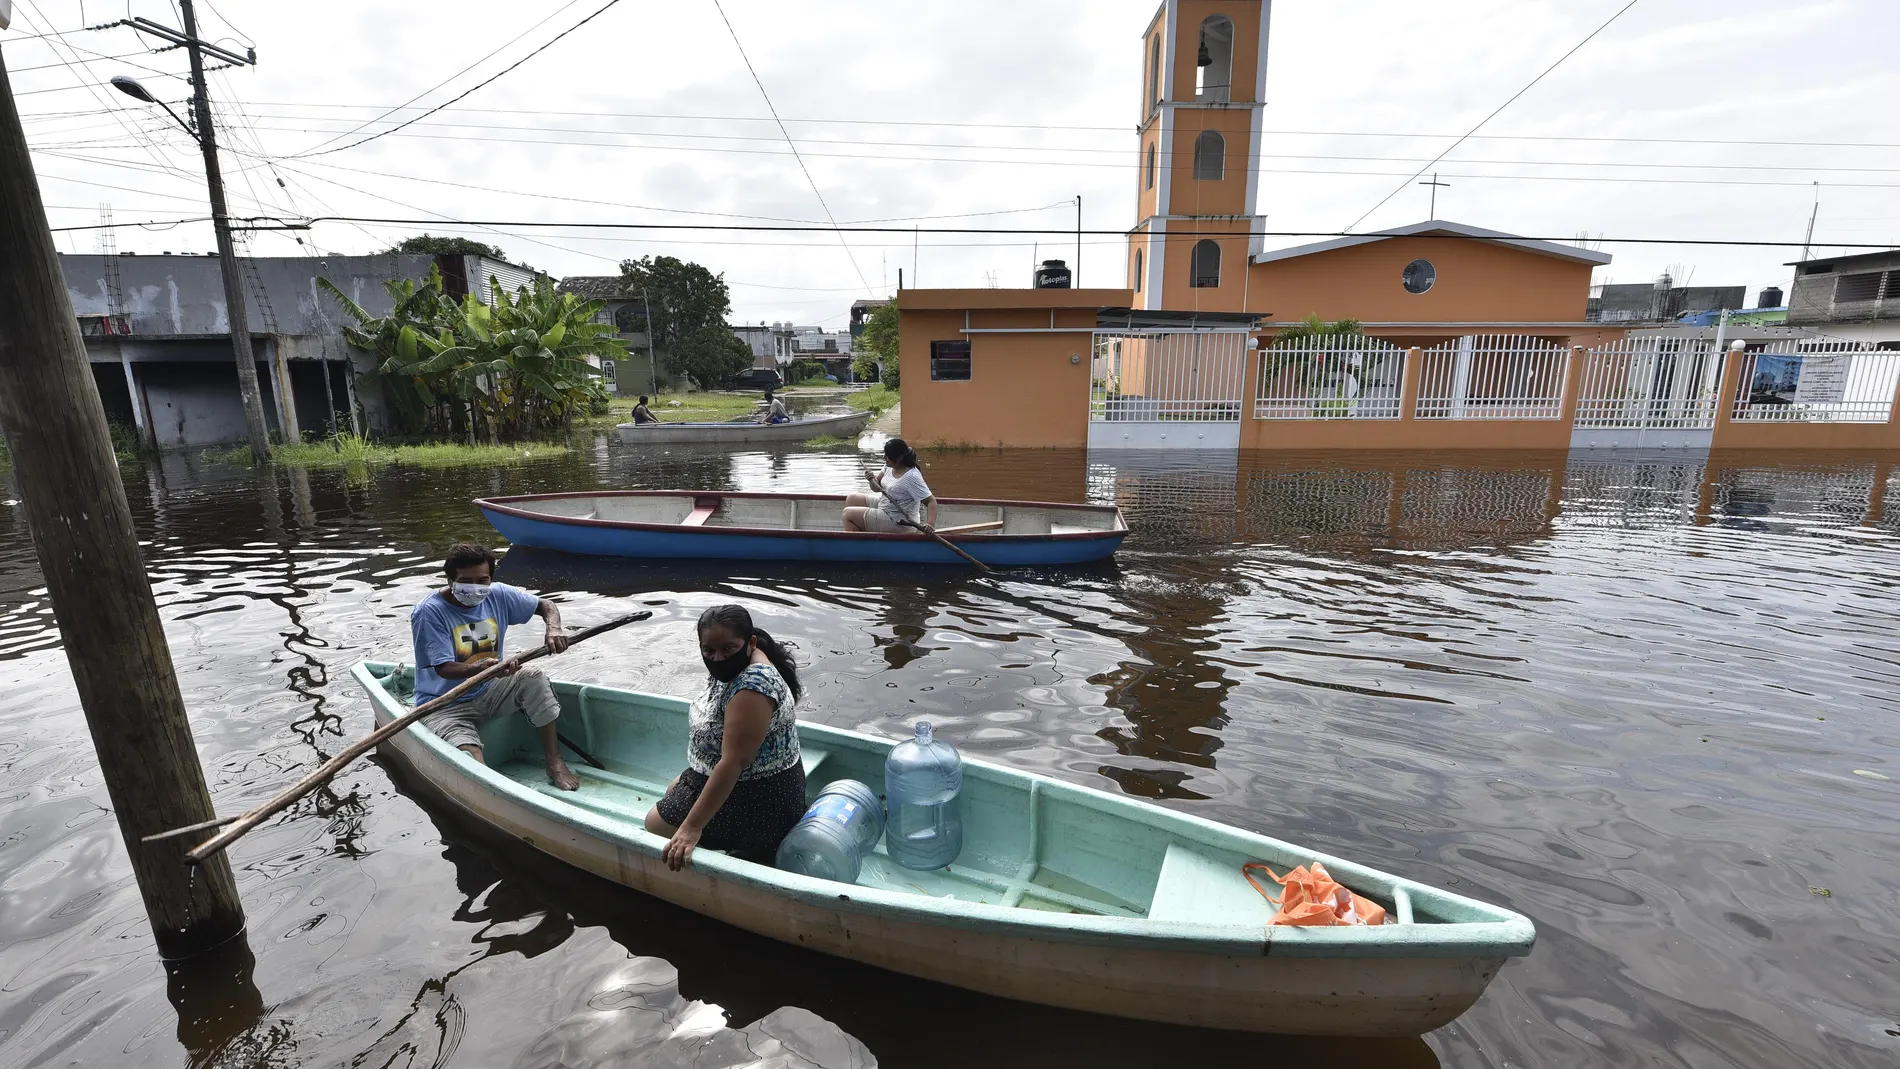 MEX8581. VILLAHERMOSA (MÉXICO), 06/10/2020.- Habitantes se movilizan en botes en medio de una calle inundada por el paso de la tormenta Gamma y a la espera del paso del huracán Delta hoy, en Villahermosa, estado de Tabasco (México). Las autoridades mexicanas decretaron este martes alerta roja, equivalente a peligro máximo, en el norte del estado caribeño de Quintana Roo, donde se encuentra la ciudad de Cancún, y evacuaron a turistas por la llegada del huracán Delta prevista para la madrugada del miércoles. EFE/ Jaime Avalos